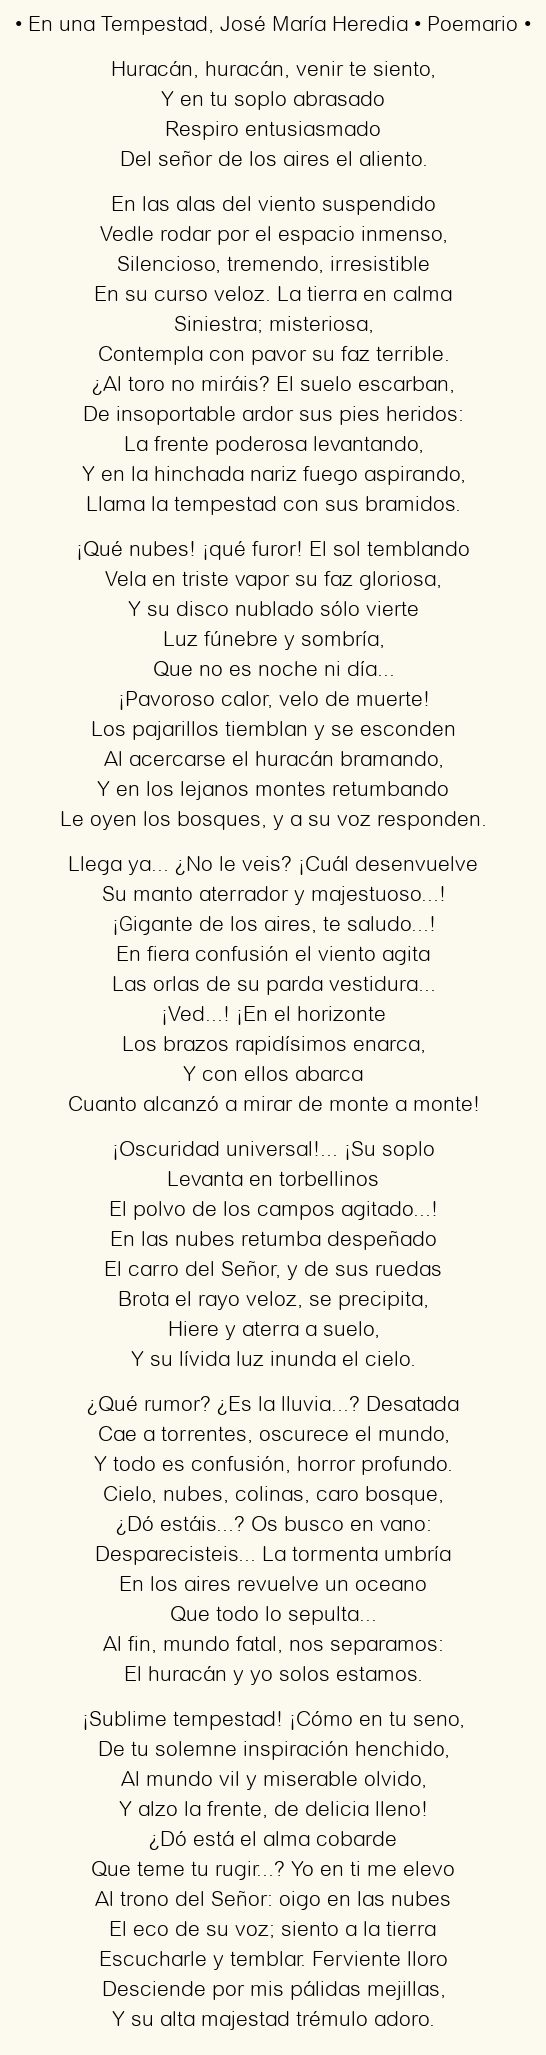 Imagen con el poema En una Tempestad, por José María Heredia